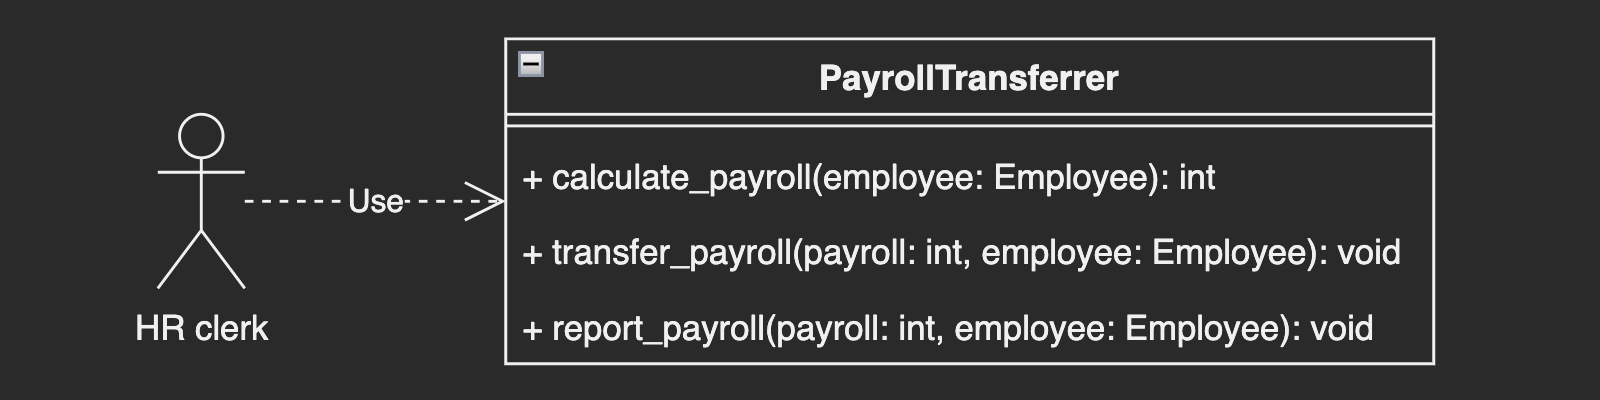 An HR department uses PayrollTransferrer